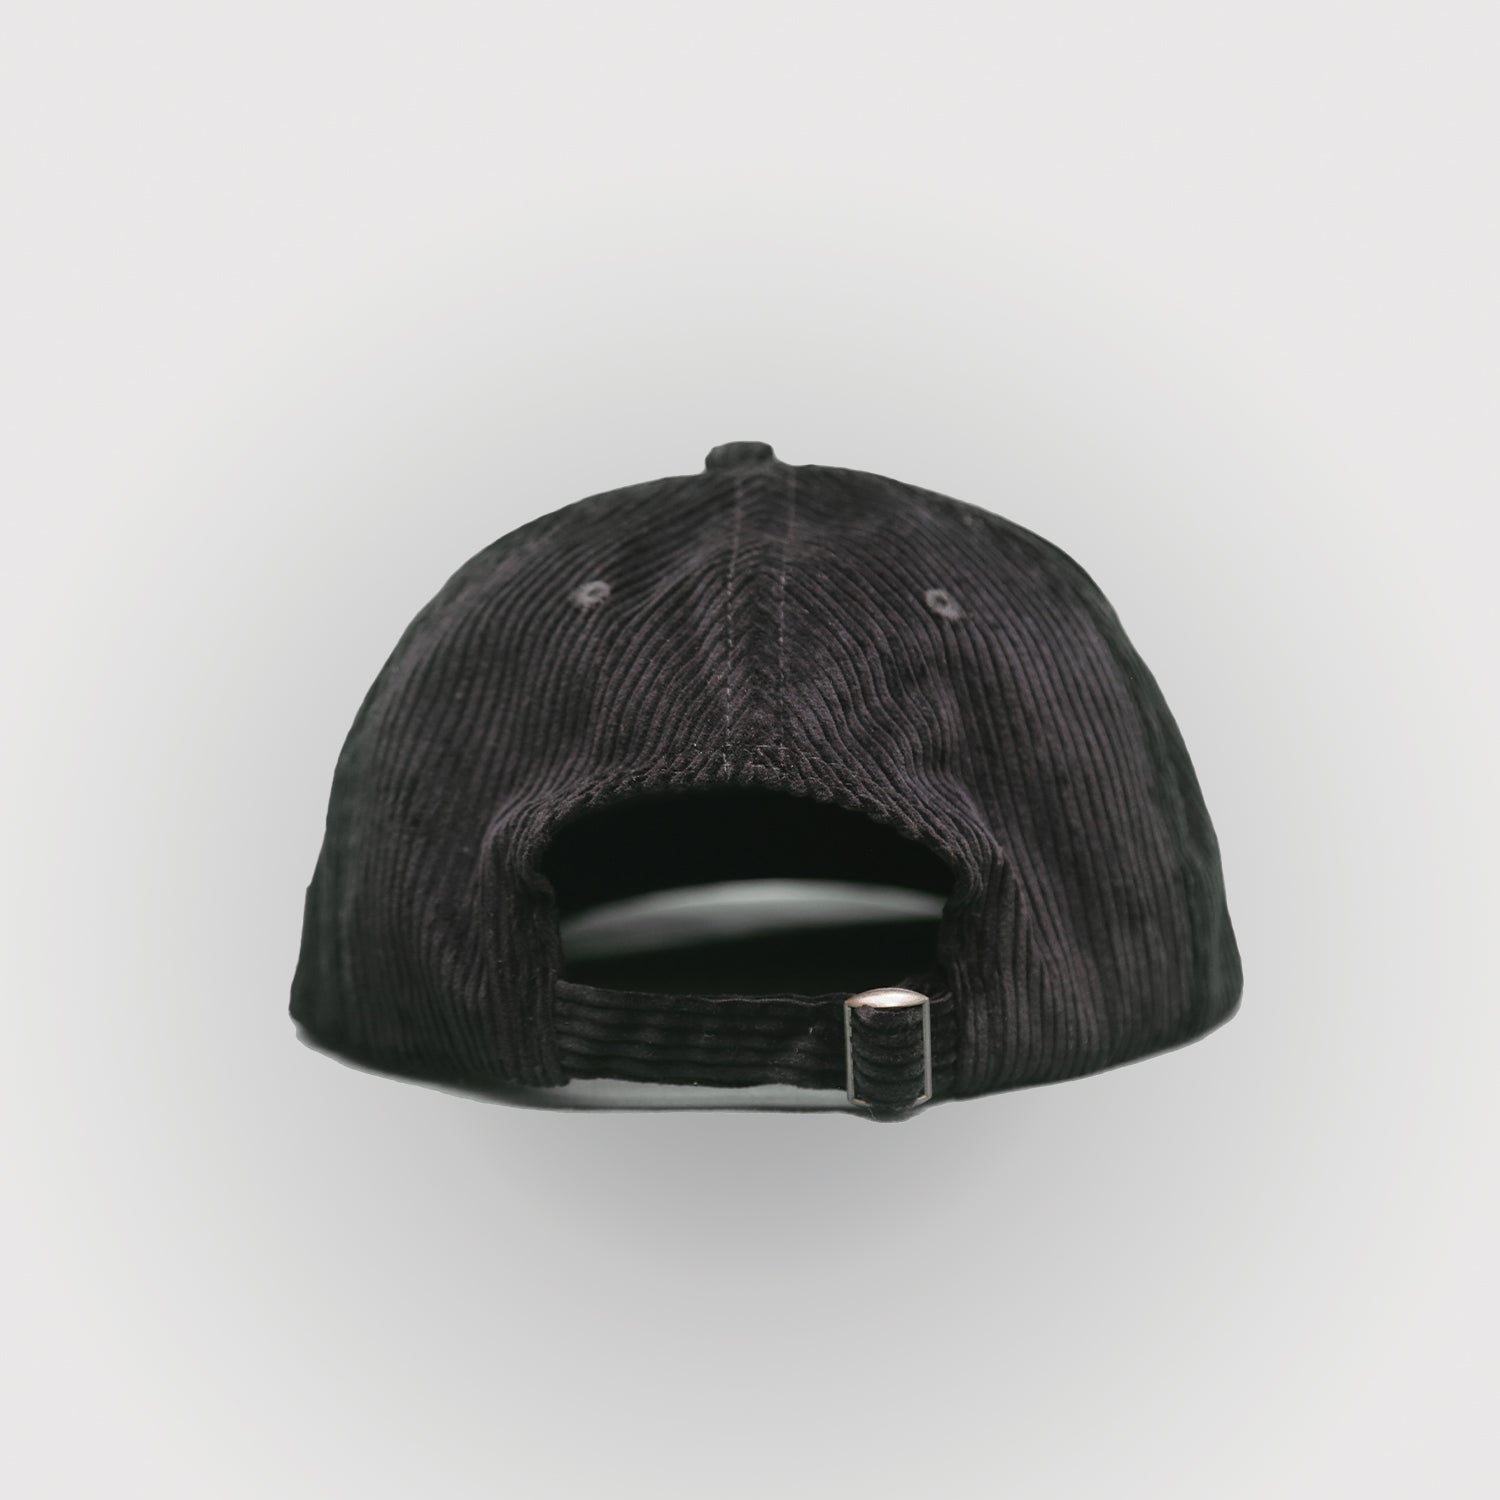 BOTWC Corduroy Six Panel Hat - Black